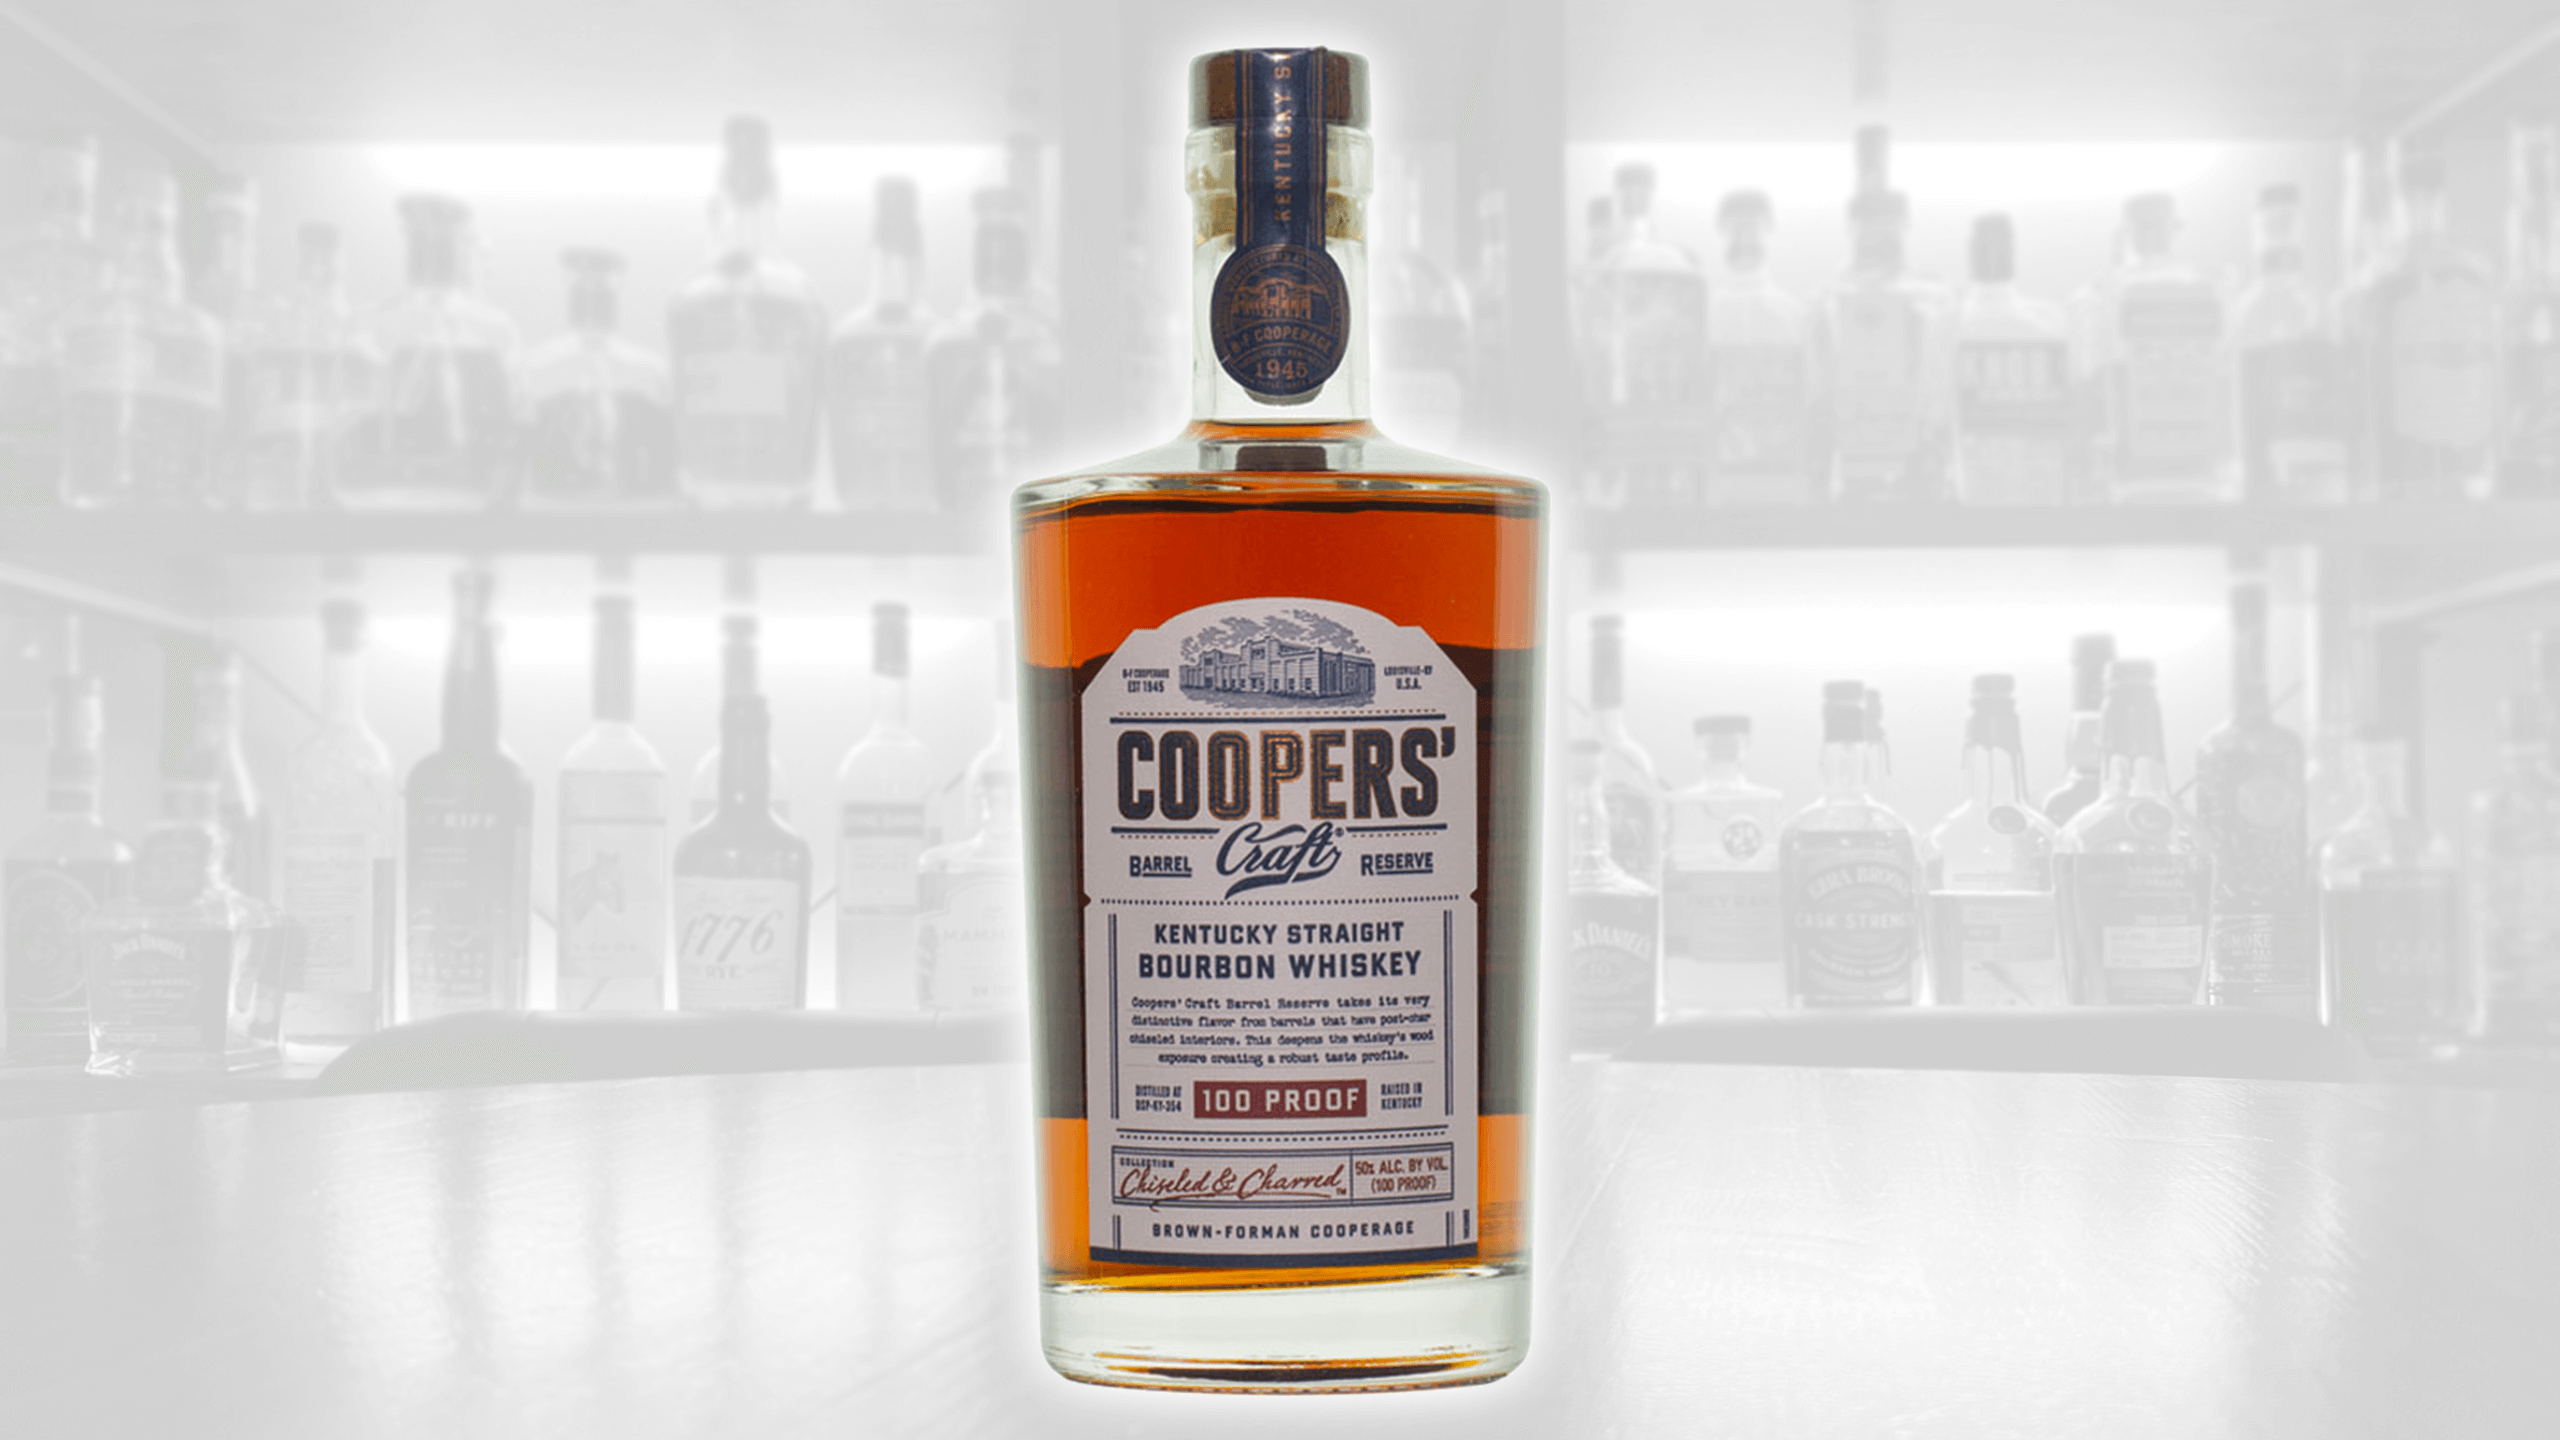 Cooper's Craft Barrel Reserve Bourbon